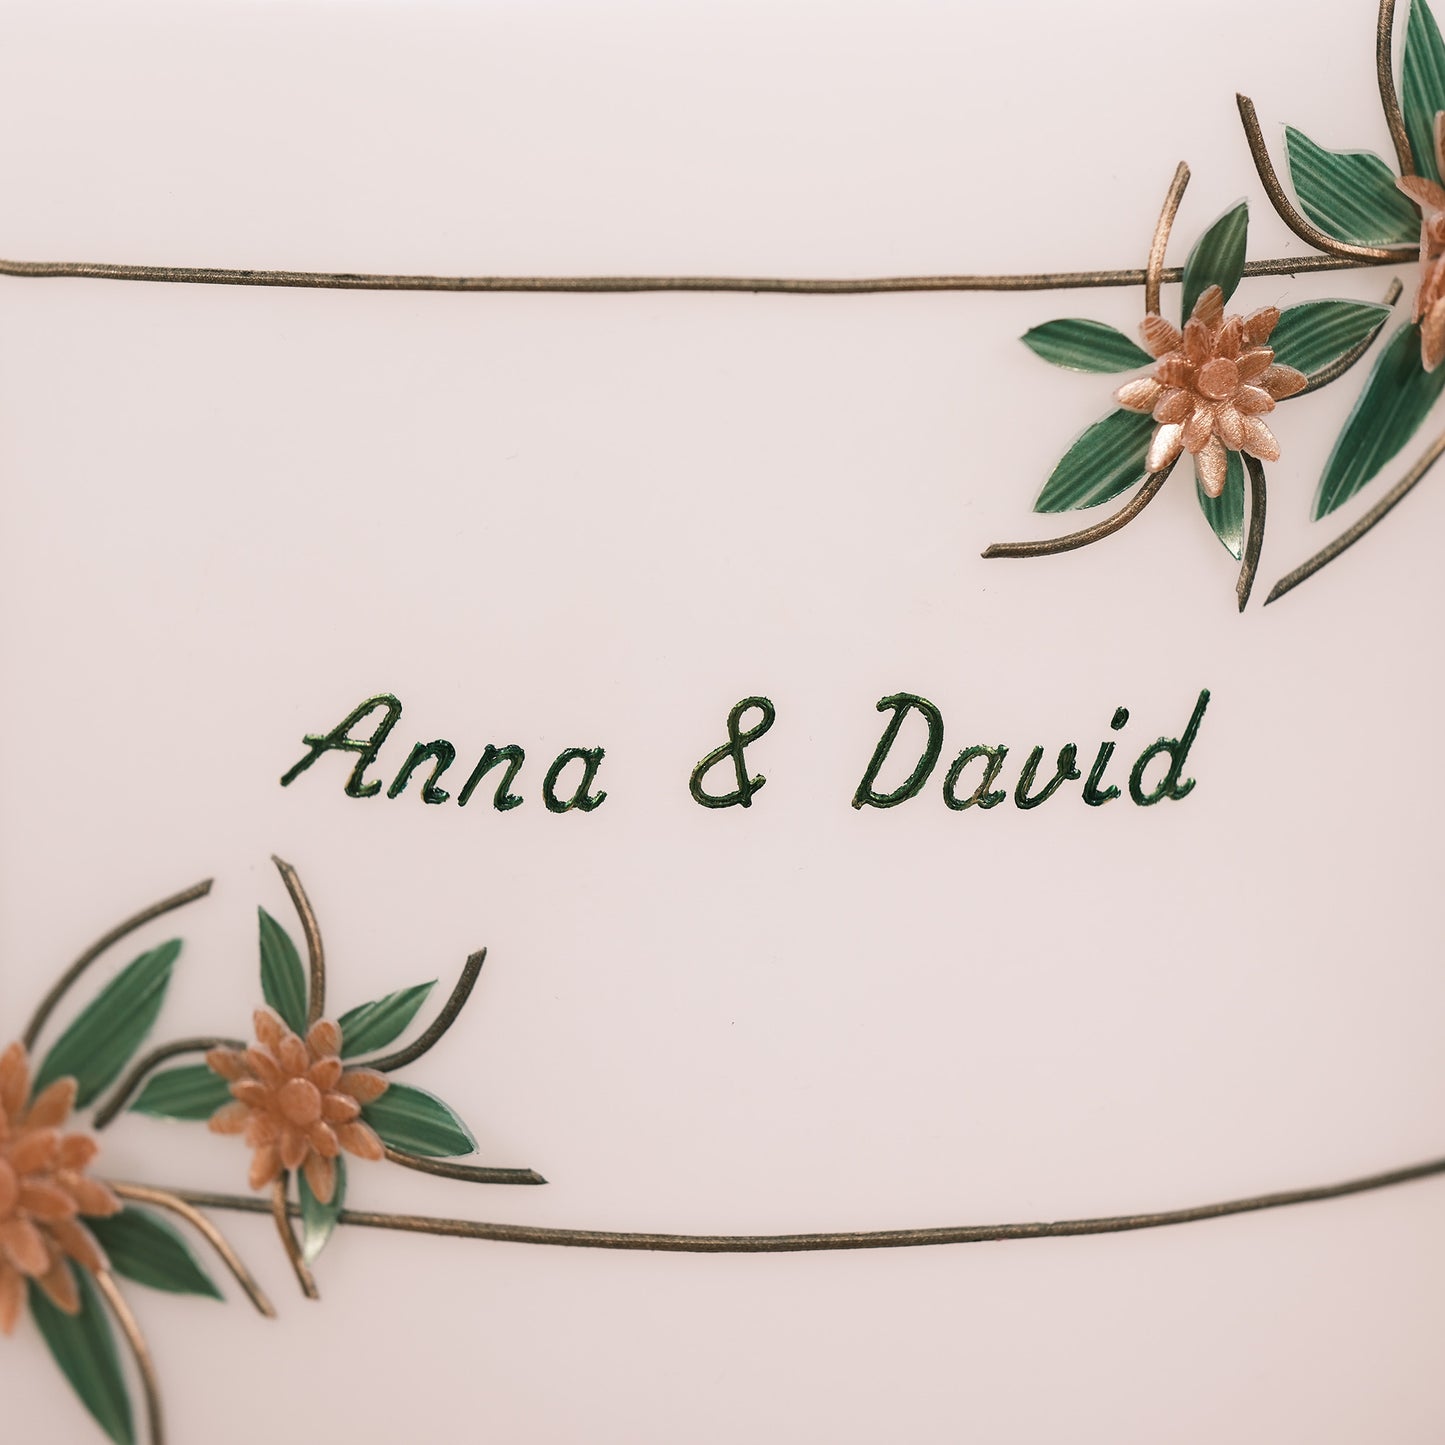 Hochzeitskerze "Anna & David"